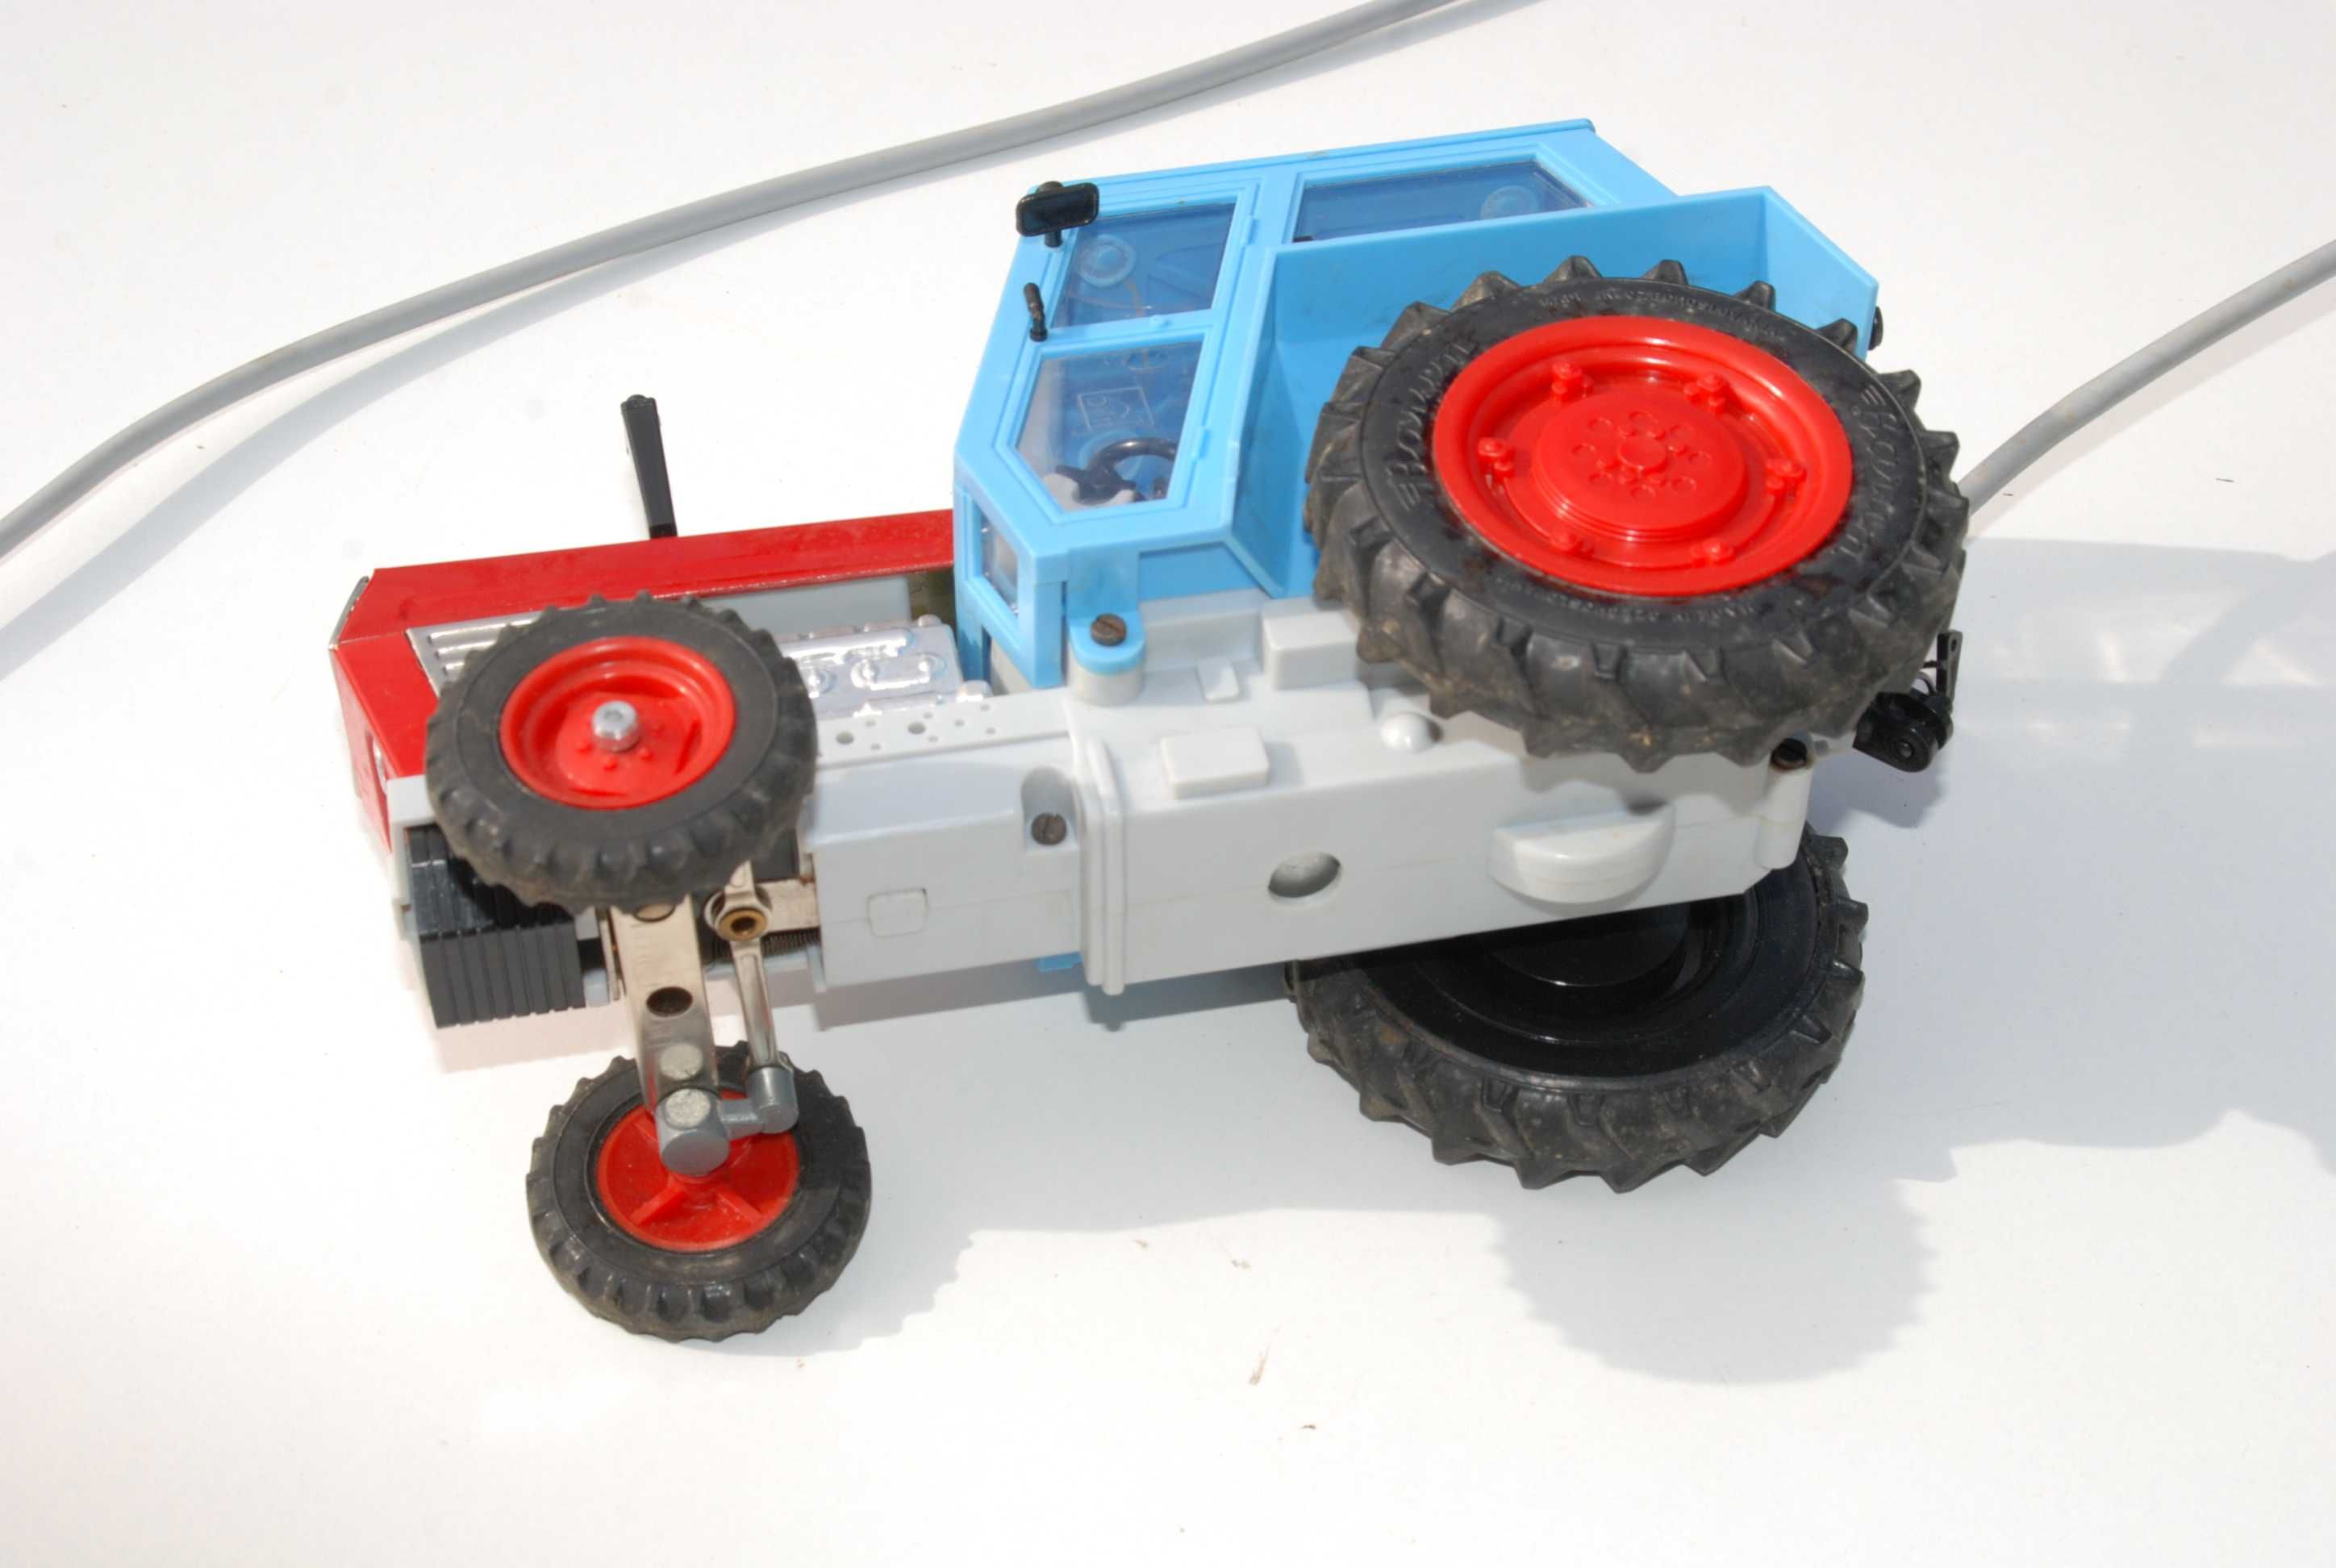 Stara zabawka traktor Traktor ZETOR Crystal 801 KDN antyk zabytek